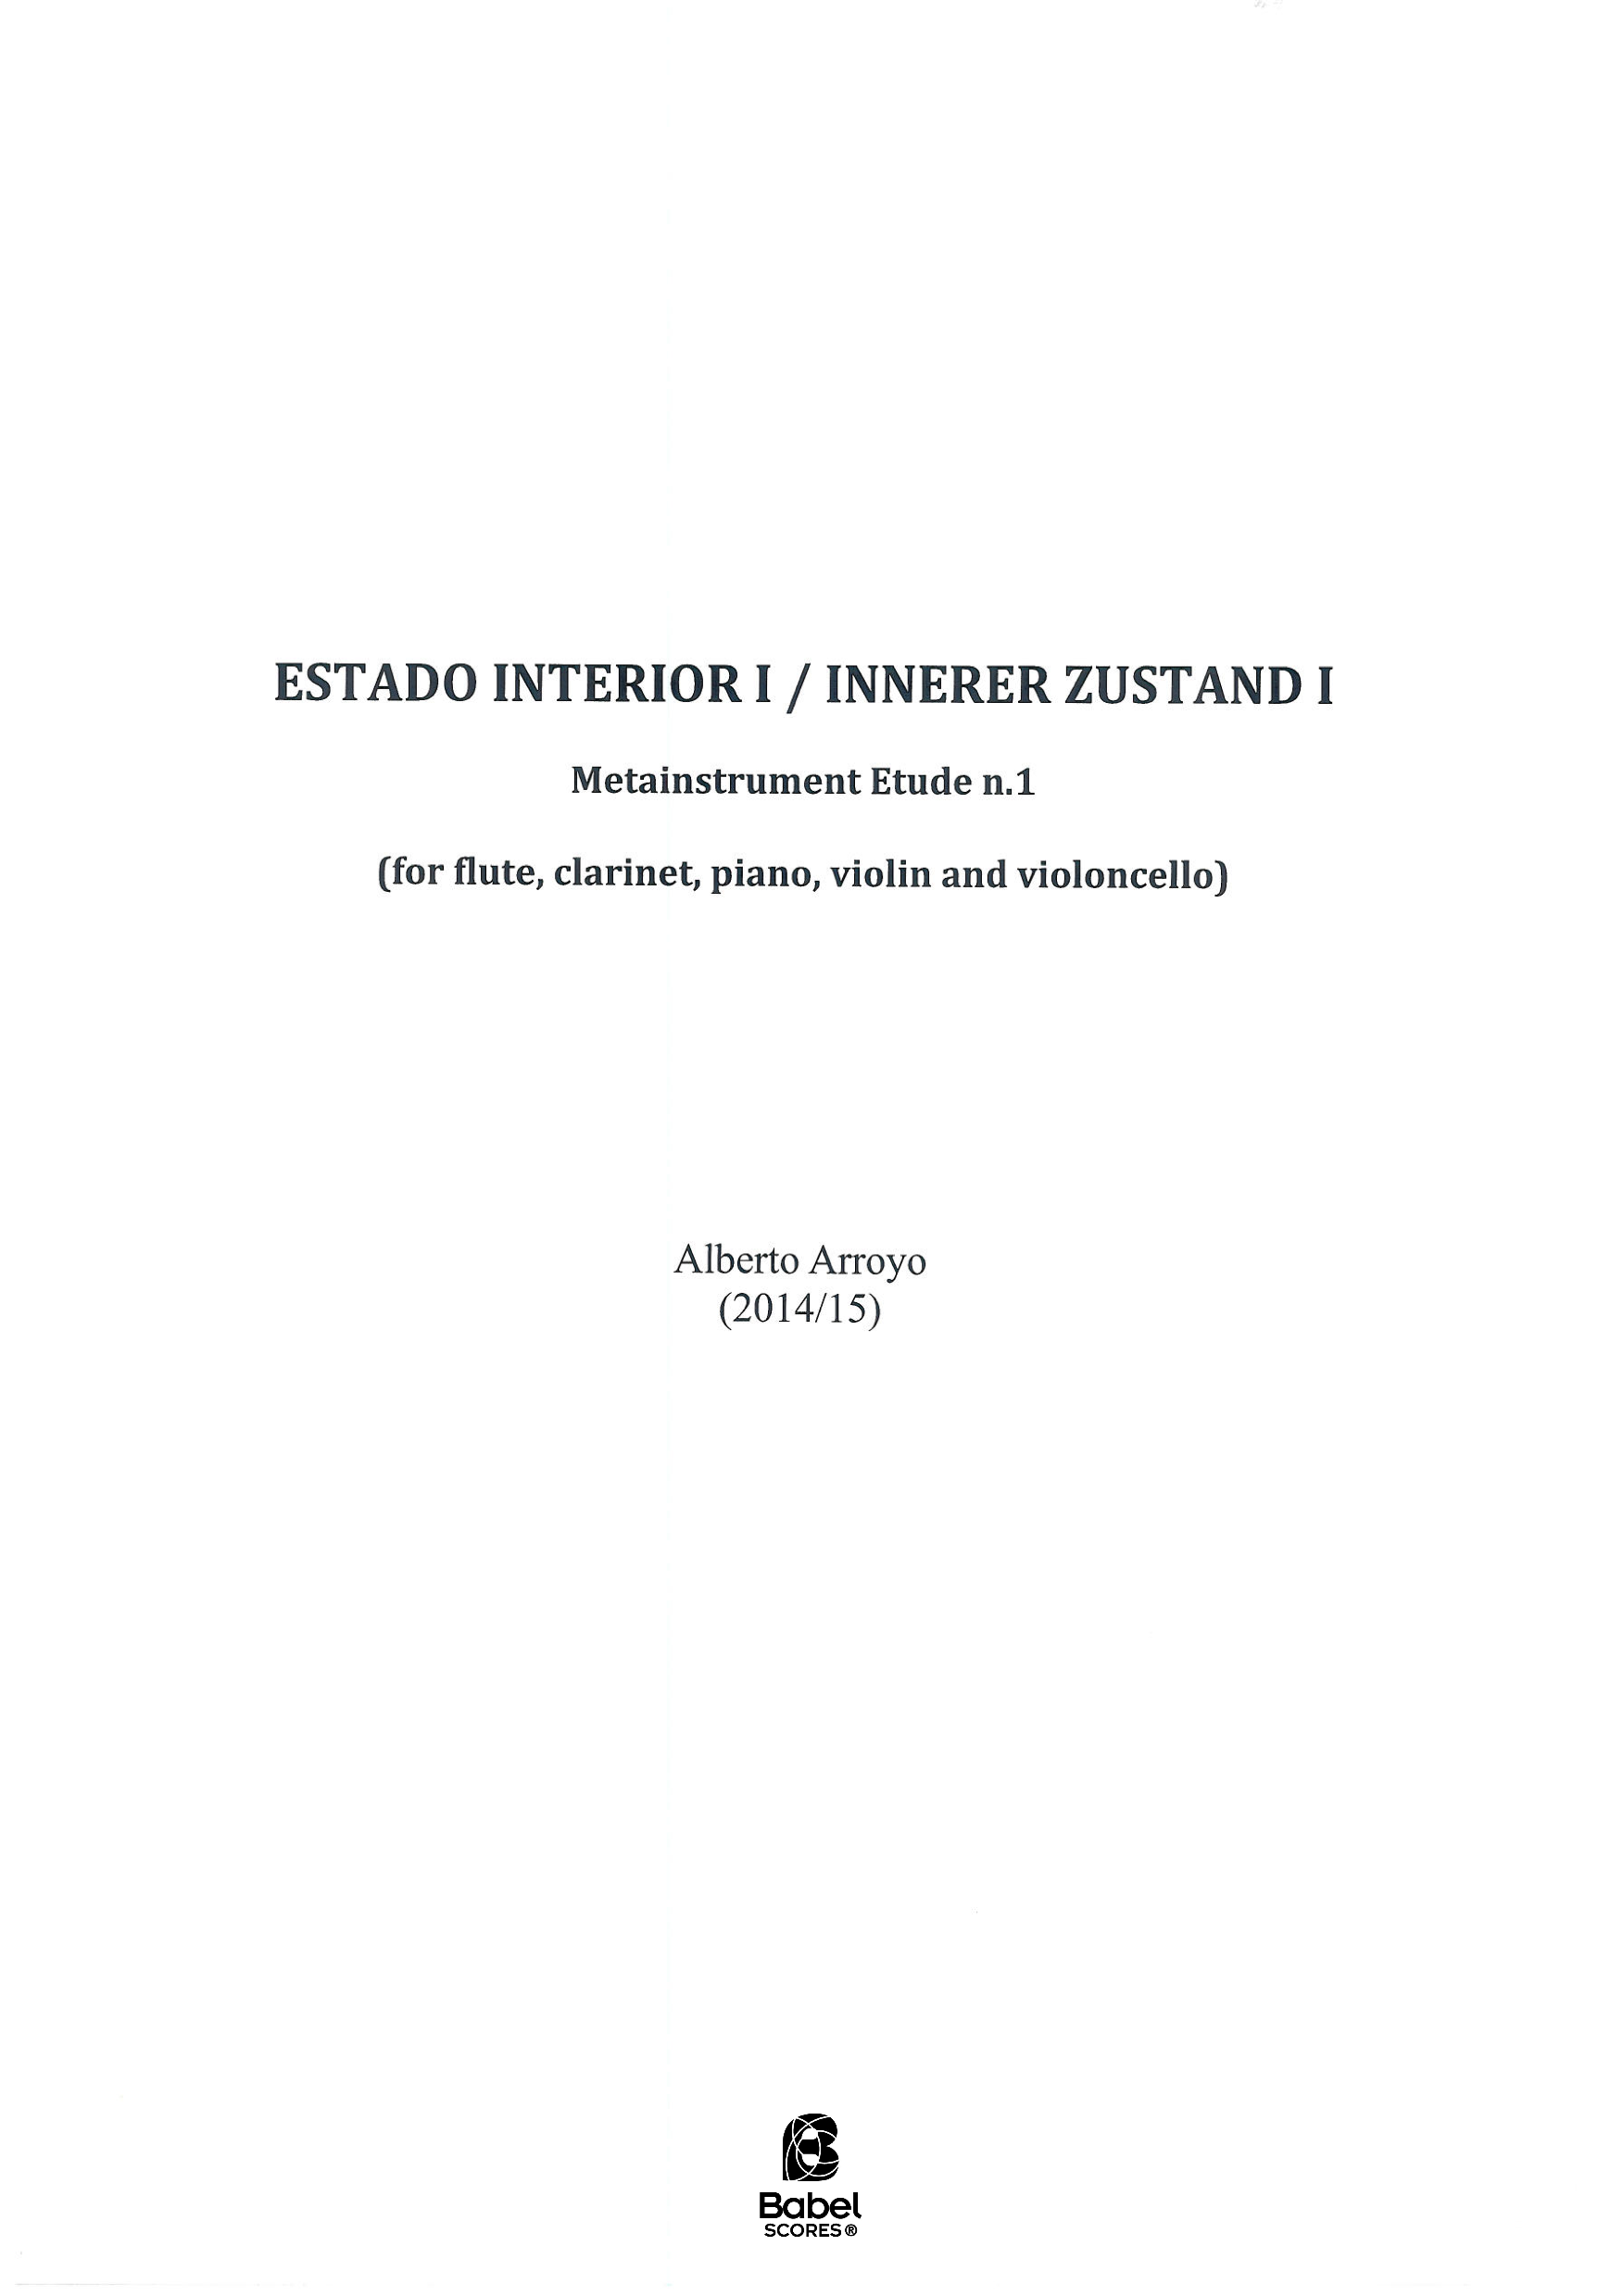 Estado Interior I _ Innerer Zustand I A3 z 3 1 25